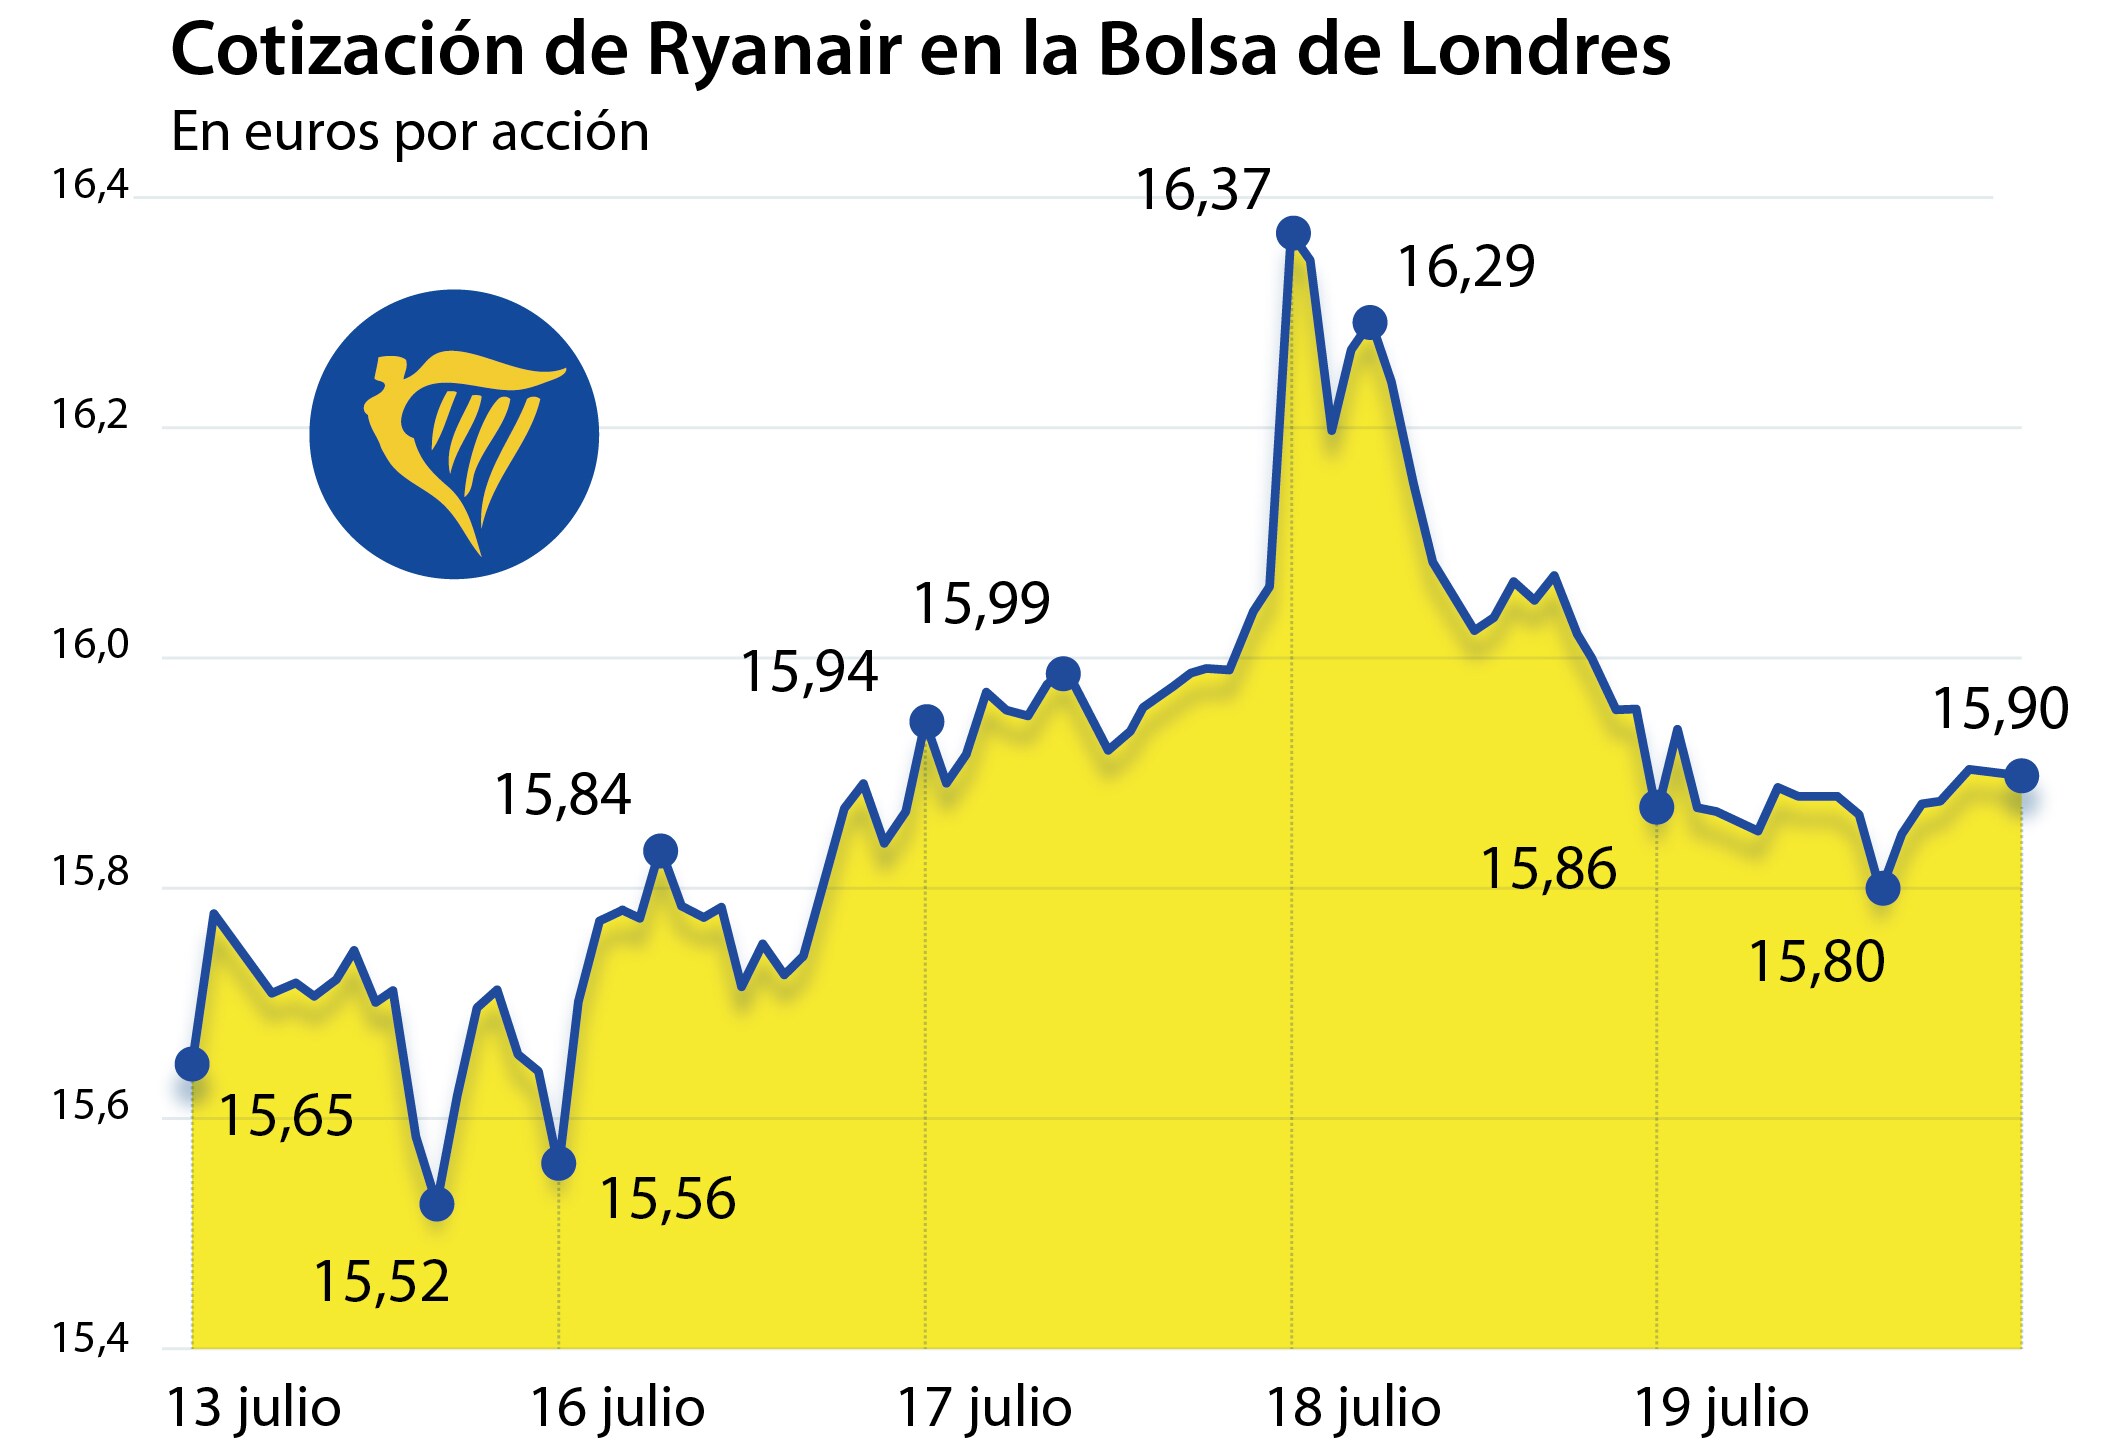 Fomento obliga a Ryanair a operar el 35% de los vuelos nacionales y el 59% de los internacionales en la huelga